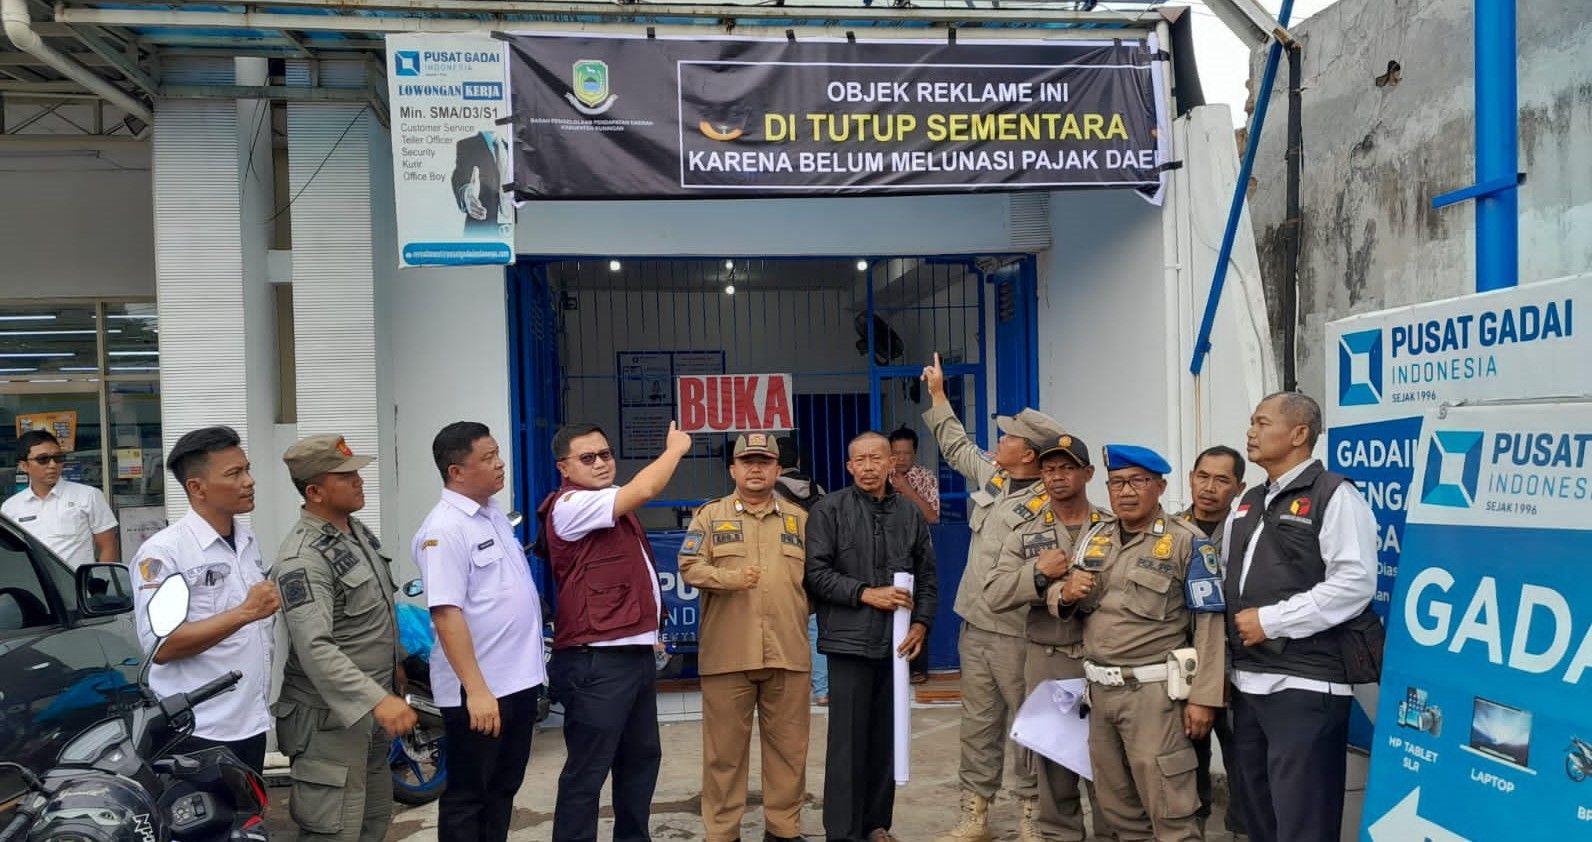 Bappenda Kuningan bersama Satpol PP menyegel kantor Pusat Gadai Indonesia di 6 titik yang berada di wilayah Kabupaten Kuningan.